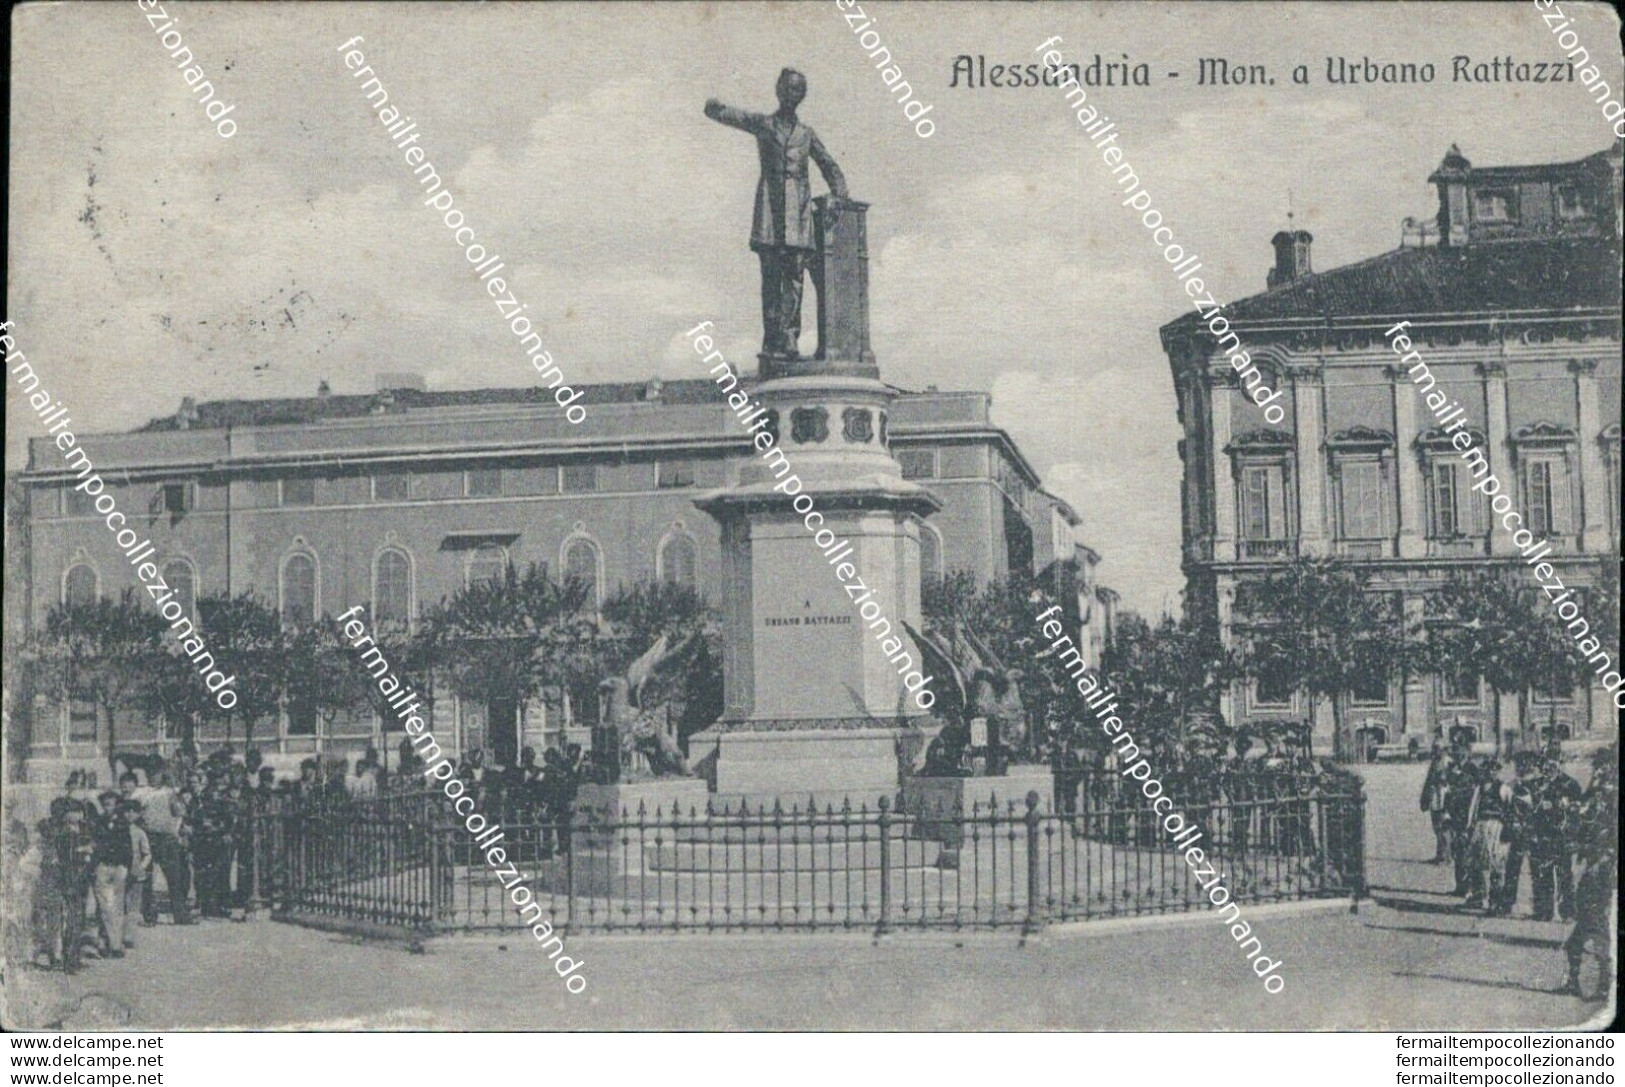 Bb296 Cartolina Alessandria Citta' Monumento A Urbano Rattazzi - Alessandria